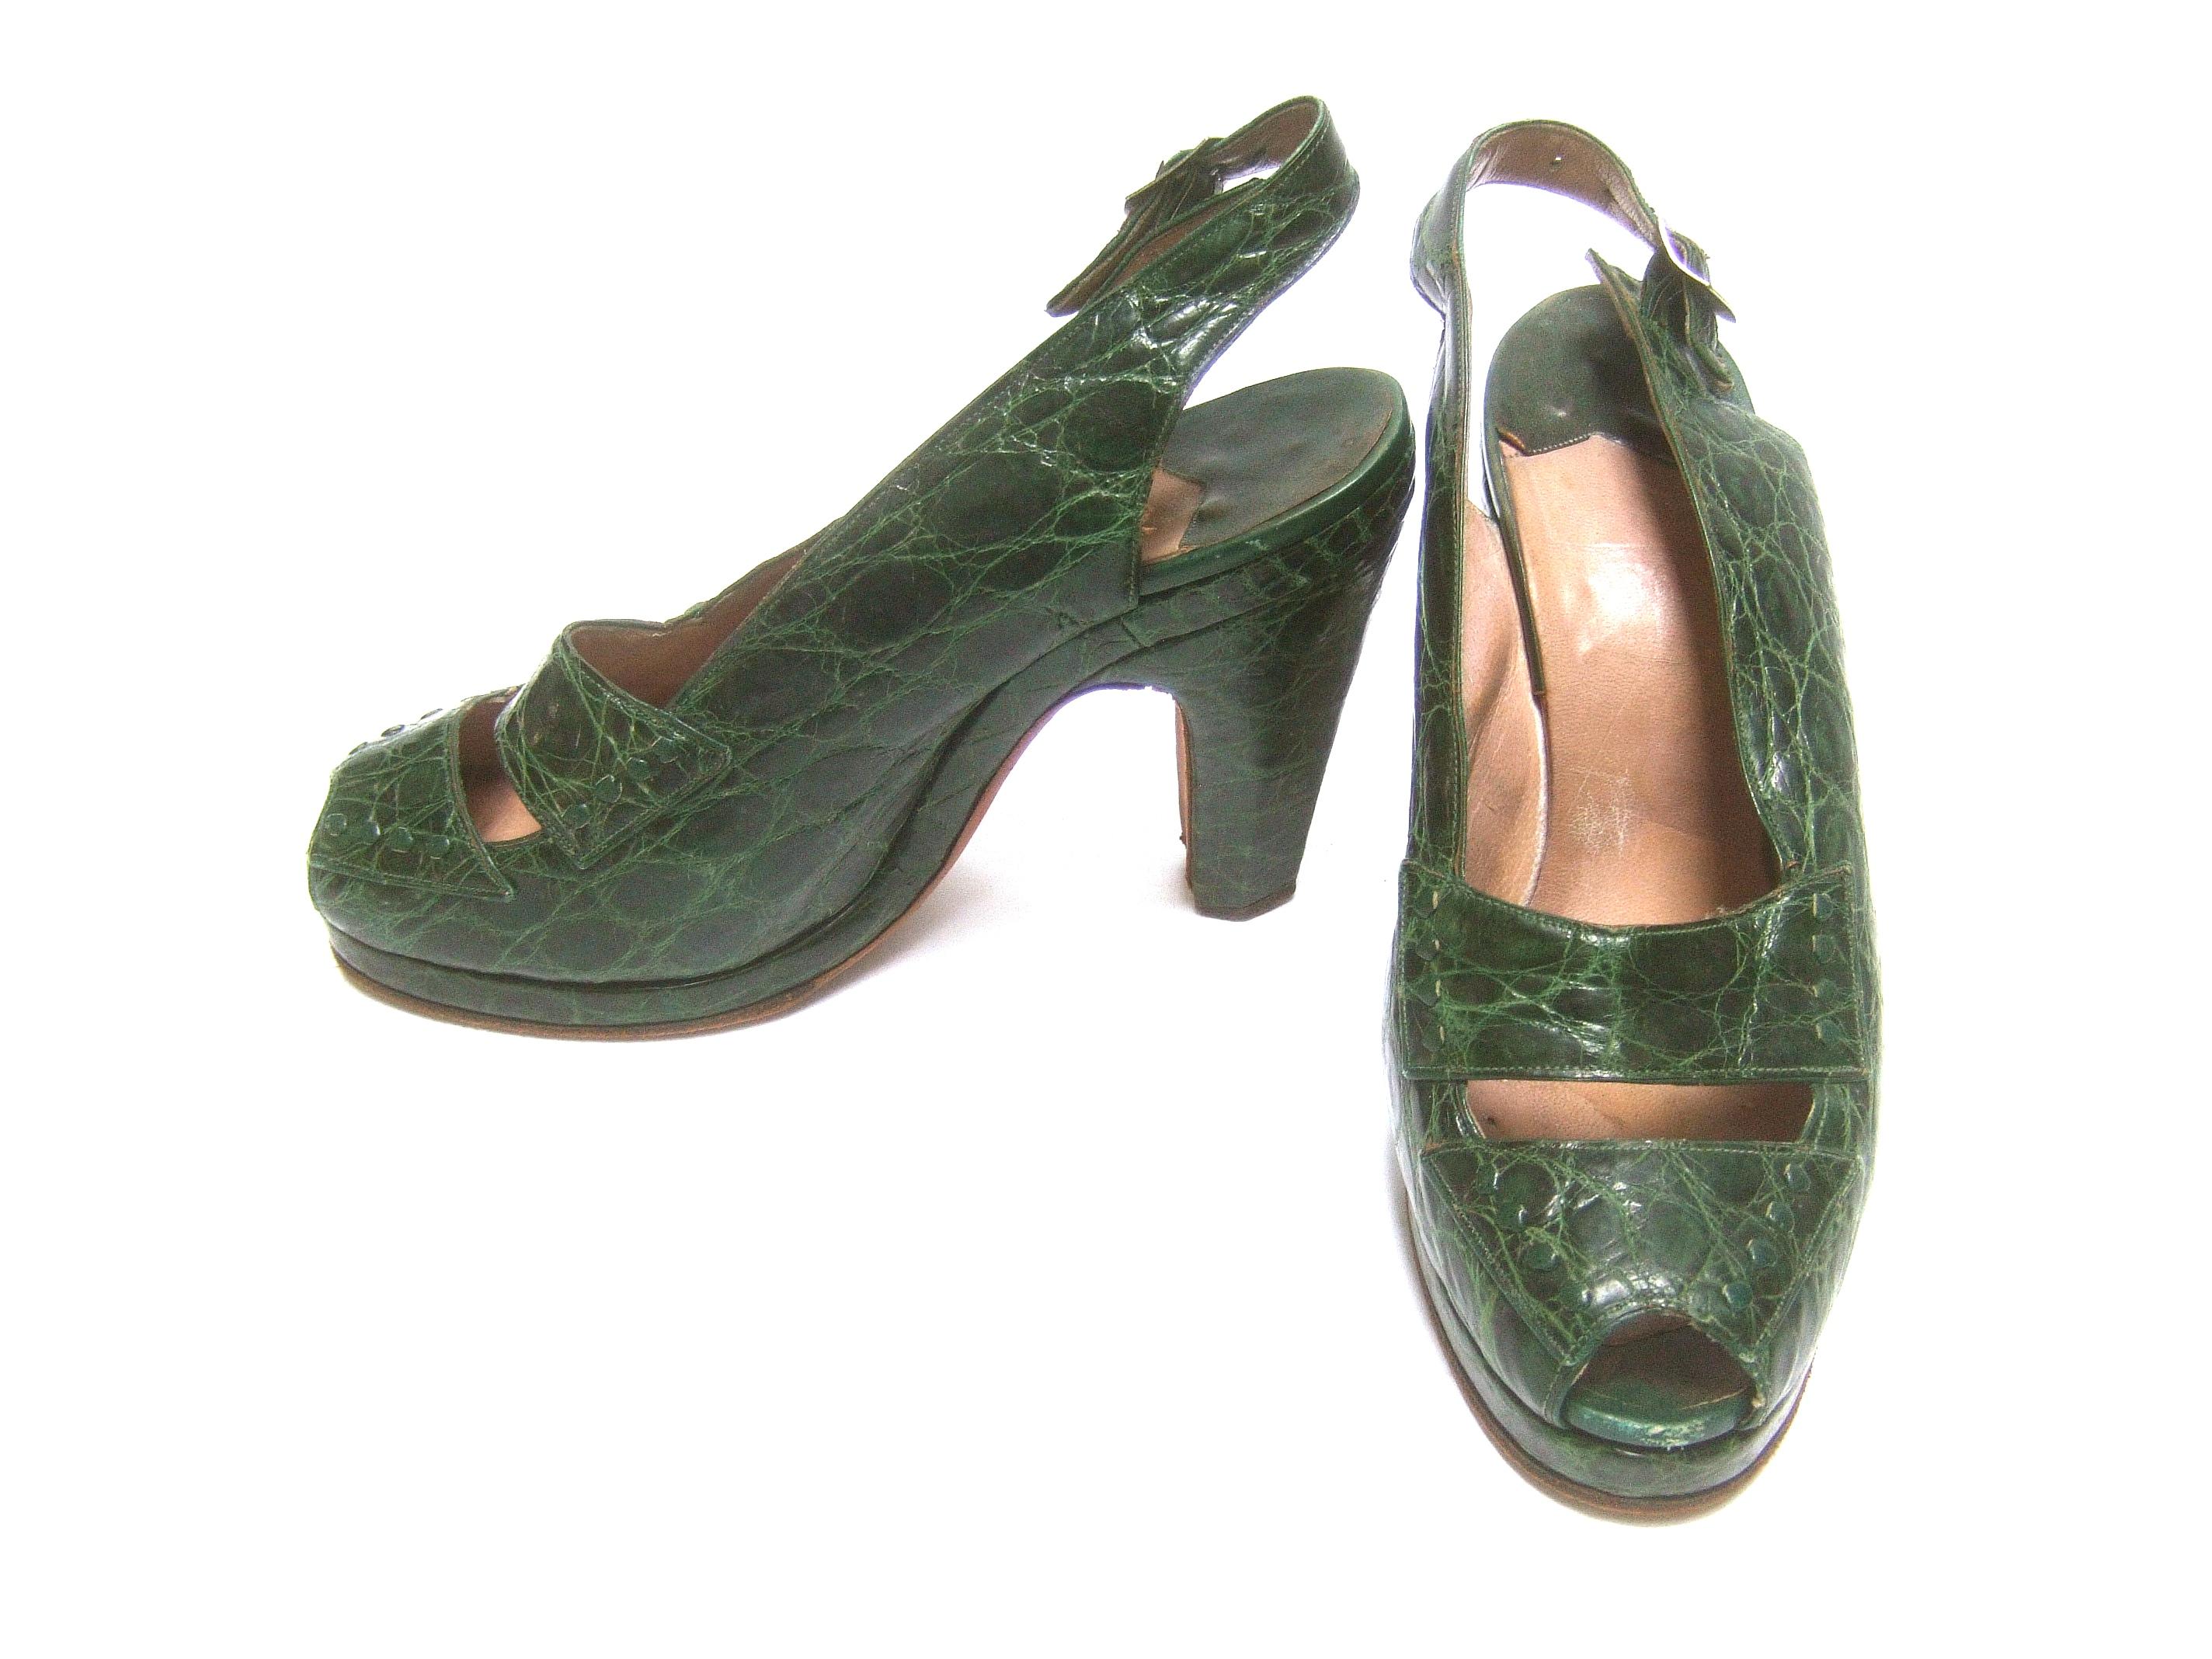 Saks Fifth Avenue 1940s Green Alligator Handbag & Peep Toe Pumps Ensemble 6